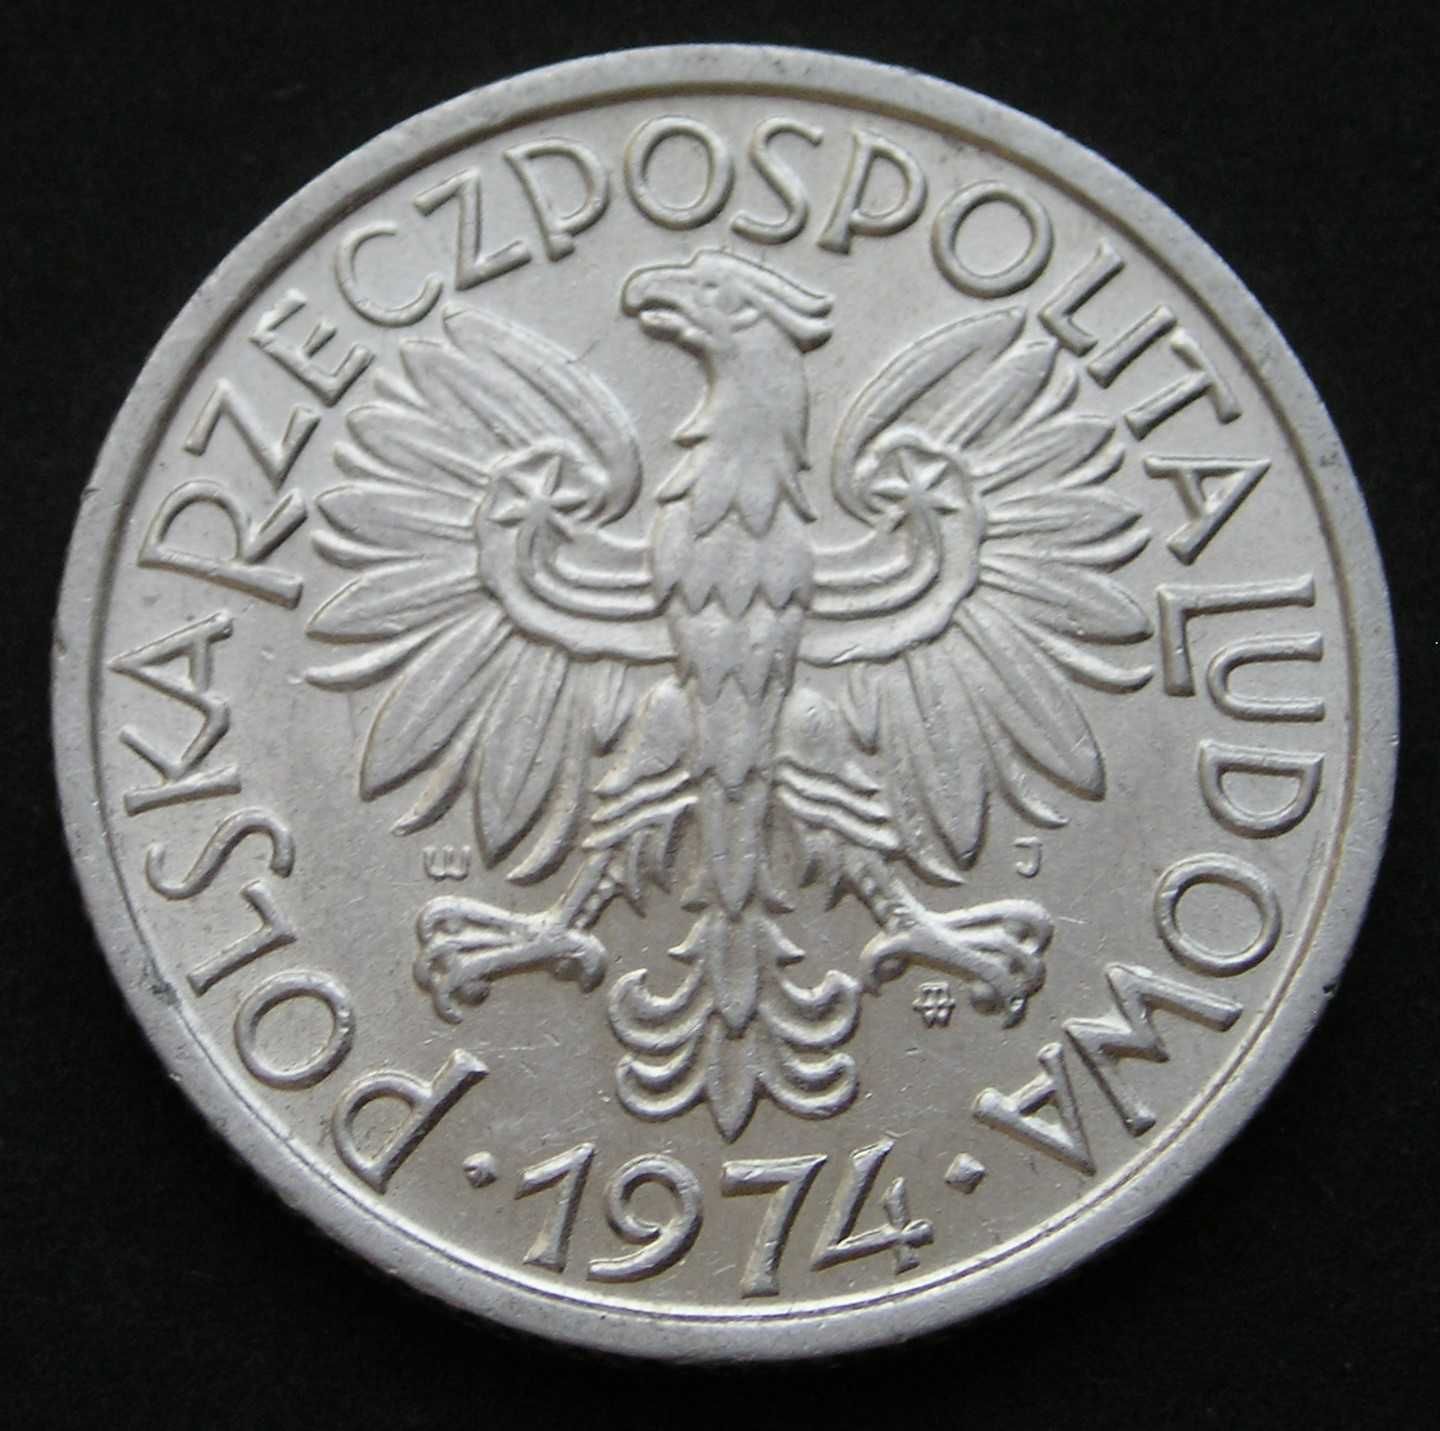 Polska 2 złote 1974 - kłosy jagody - stan 2